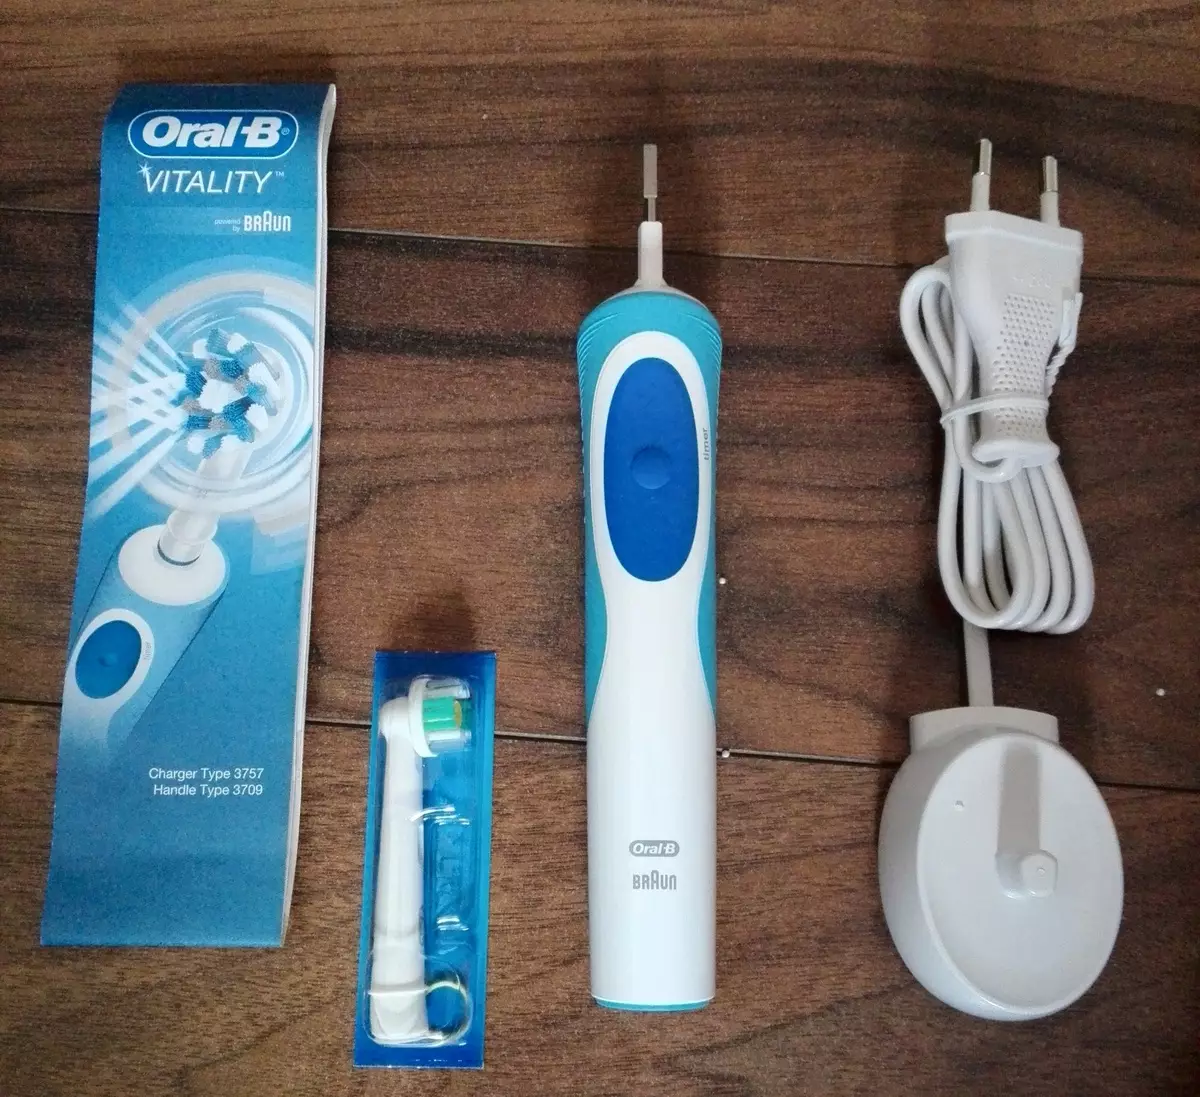 فرشاة الأسنان الكهربائية oral-b: vitality and pro 500، القلة و 3D الأبيض، الذكية 4 والكهرباء البرنس الأخرى. كيفة تختار؟ تقييم 16159_40